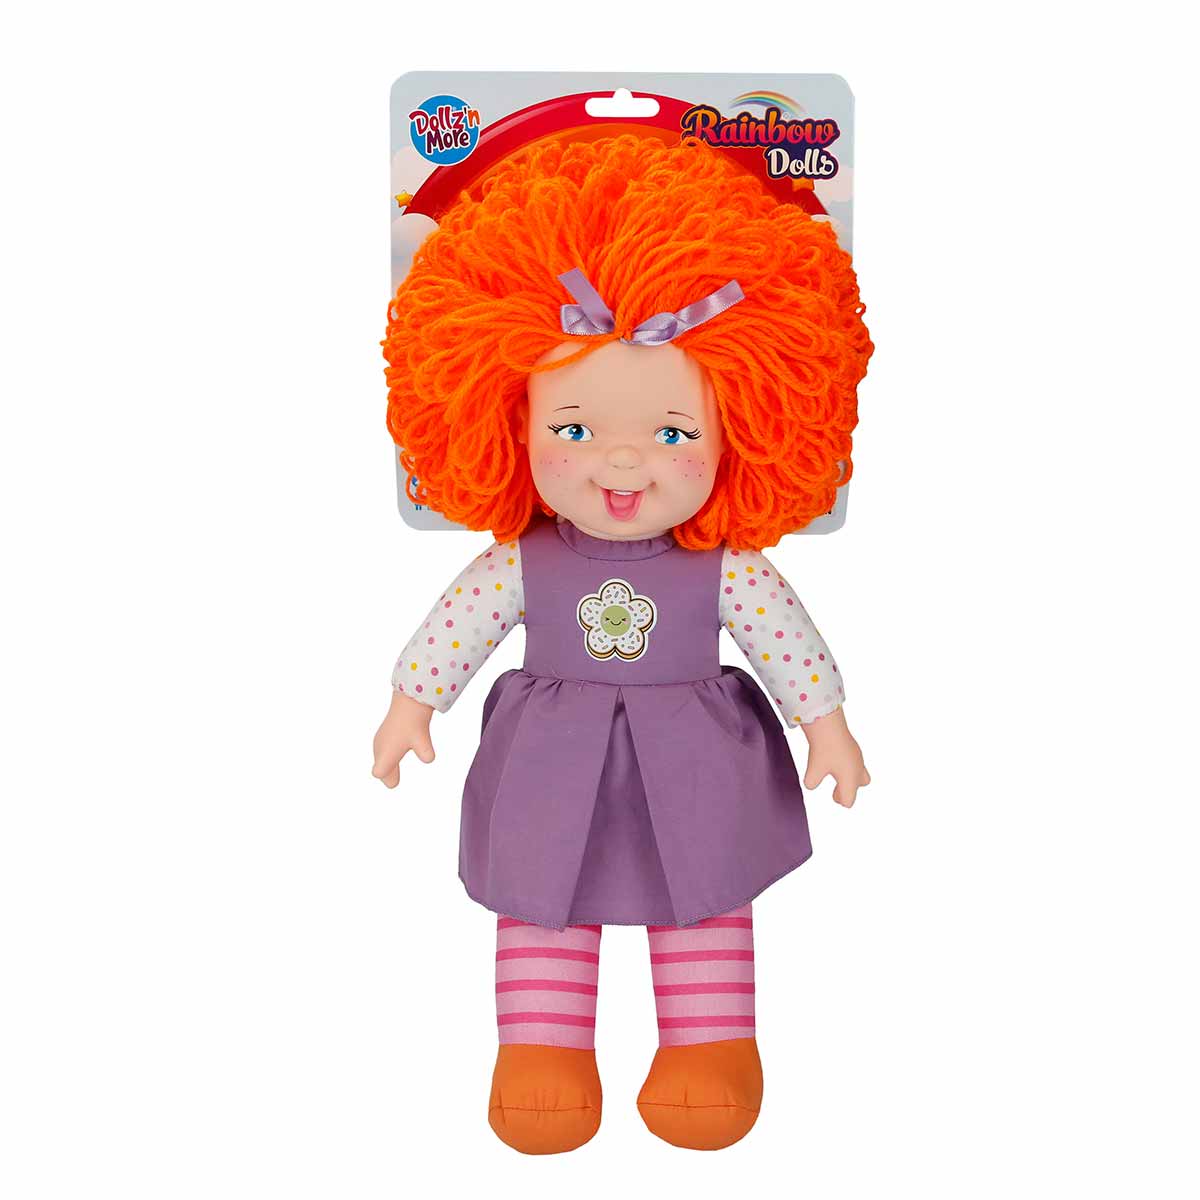 Papusa Rainbow Dolls, Dollzn More, cu par portocaliu, 45 cm Dolls